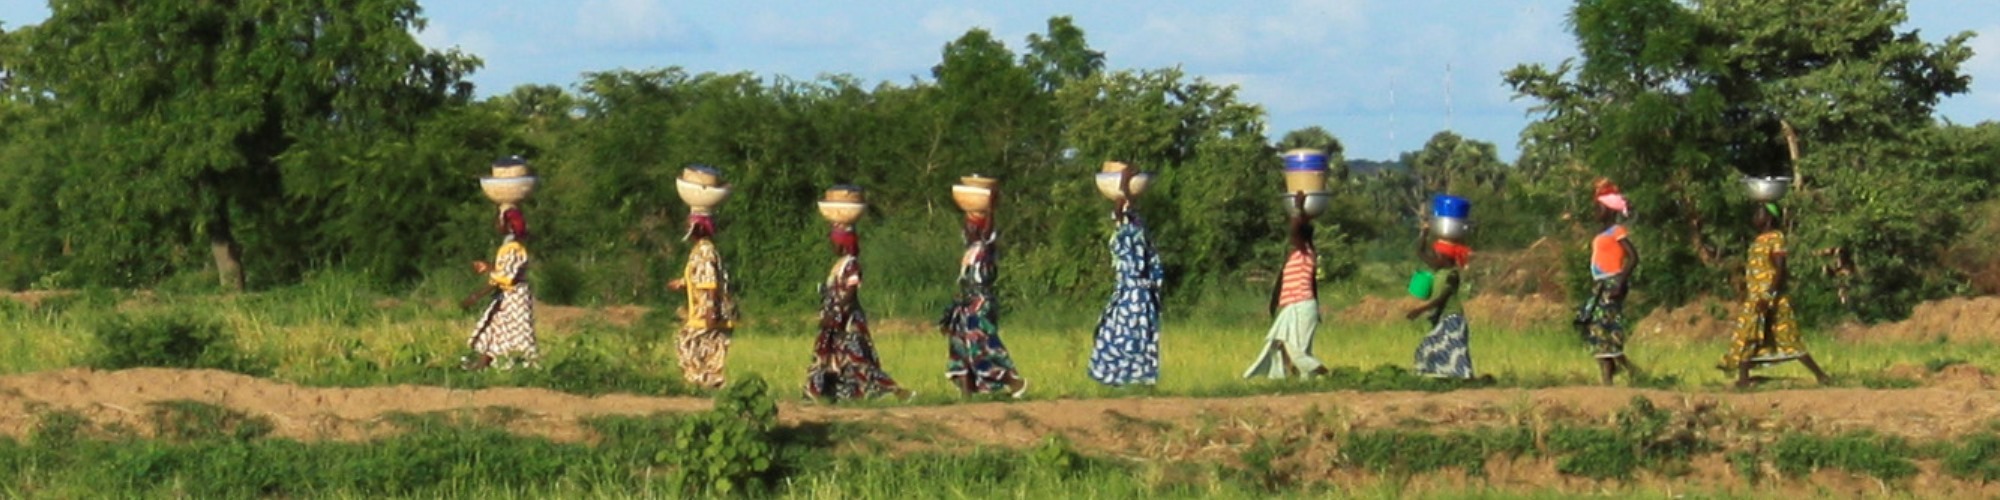 women rice farmers in benin